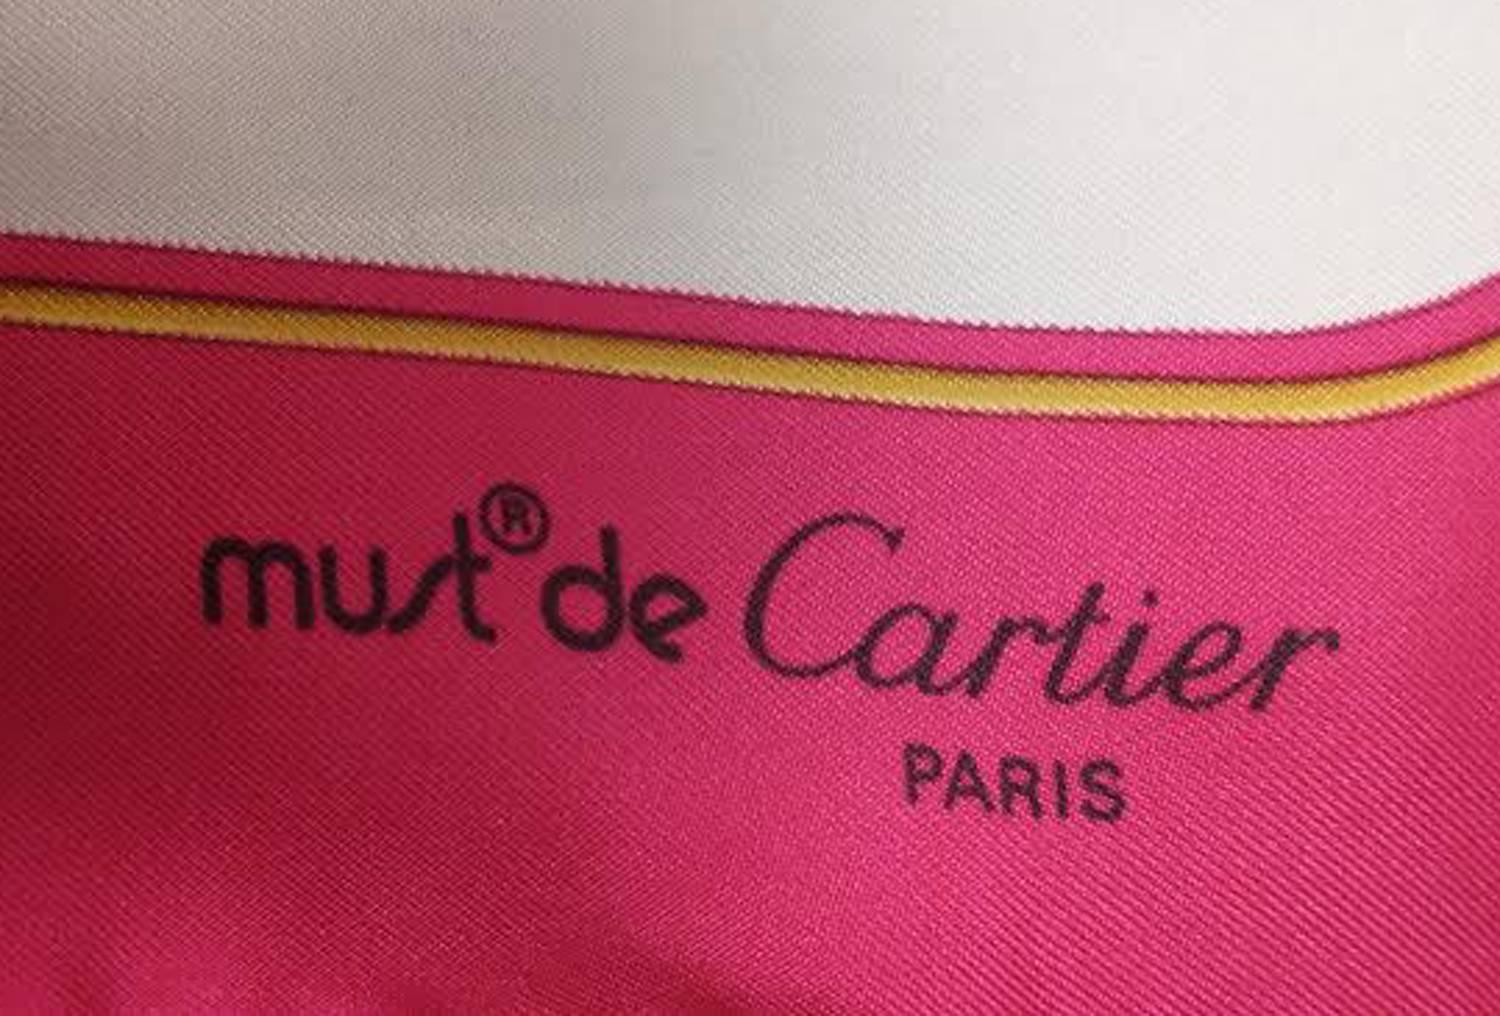 1990s Must de Cartier Paris Hot Pink Silk Scarf 4